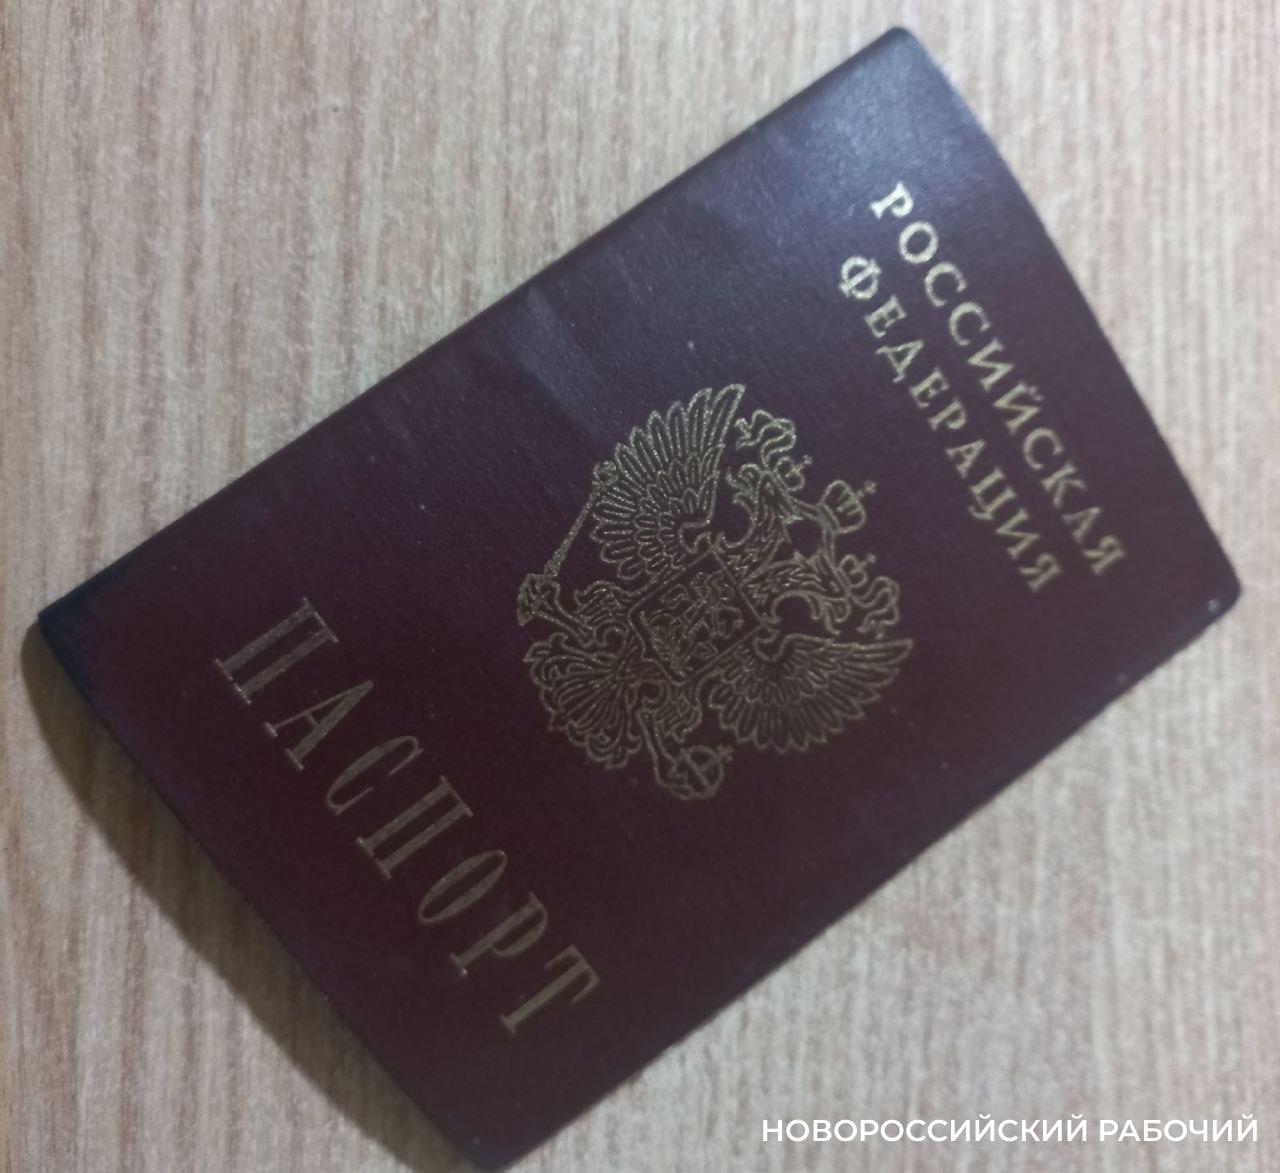 Жительница Краснодара заключила договор аренды с новороссийцем по подложному паспорту